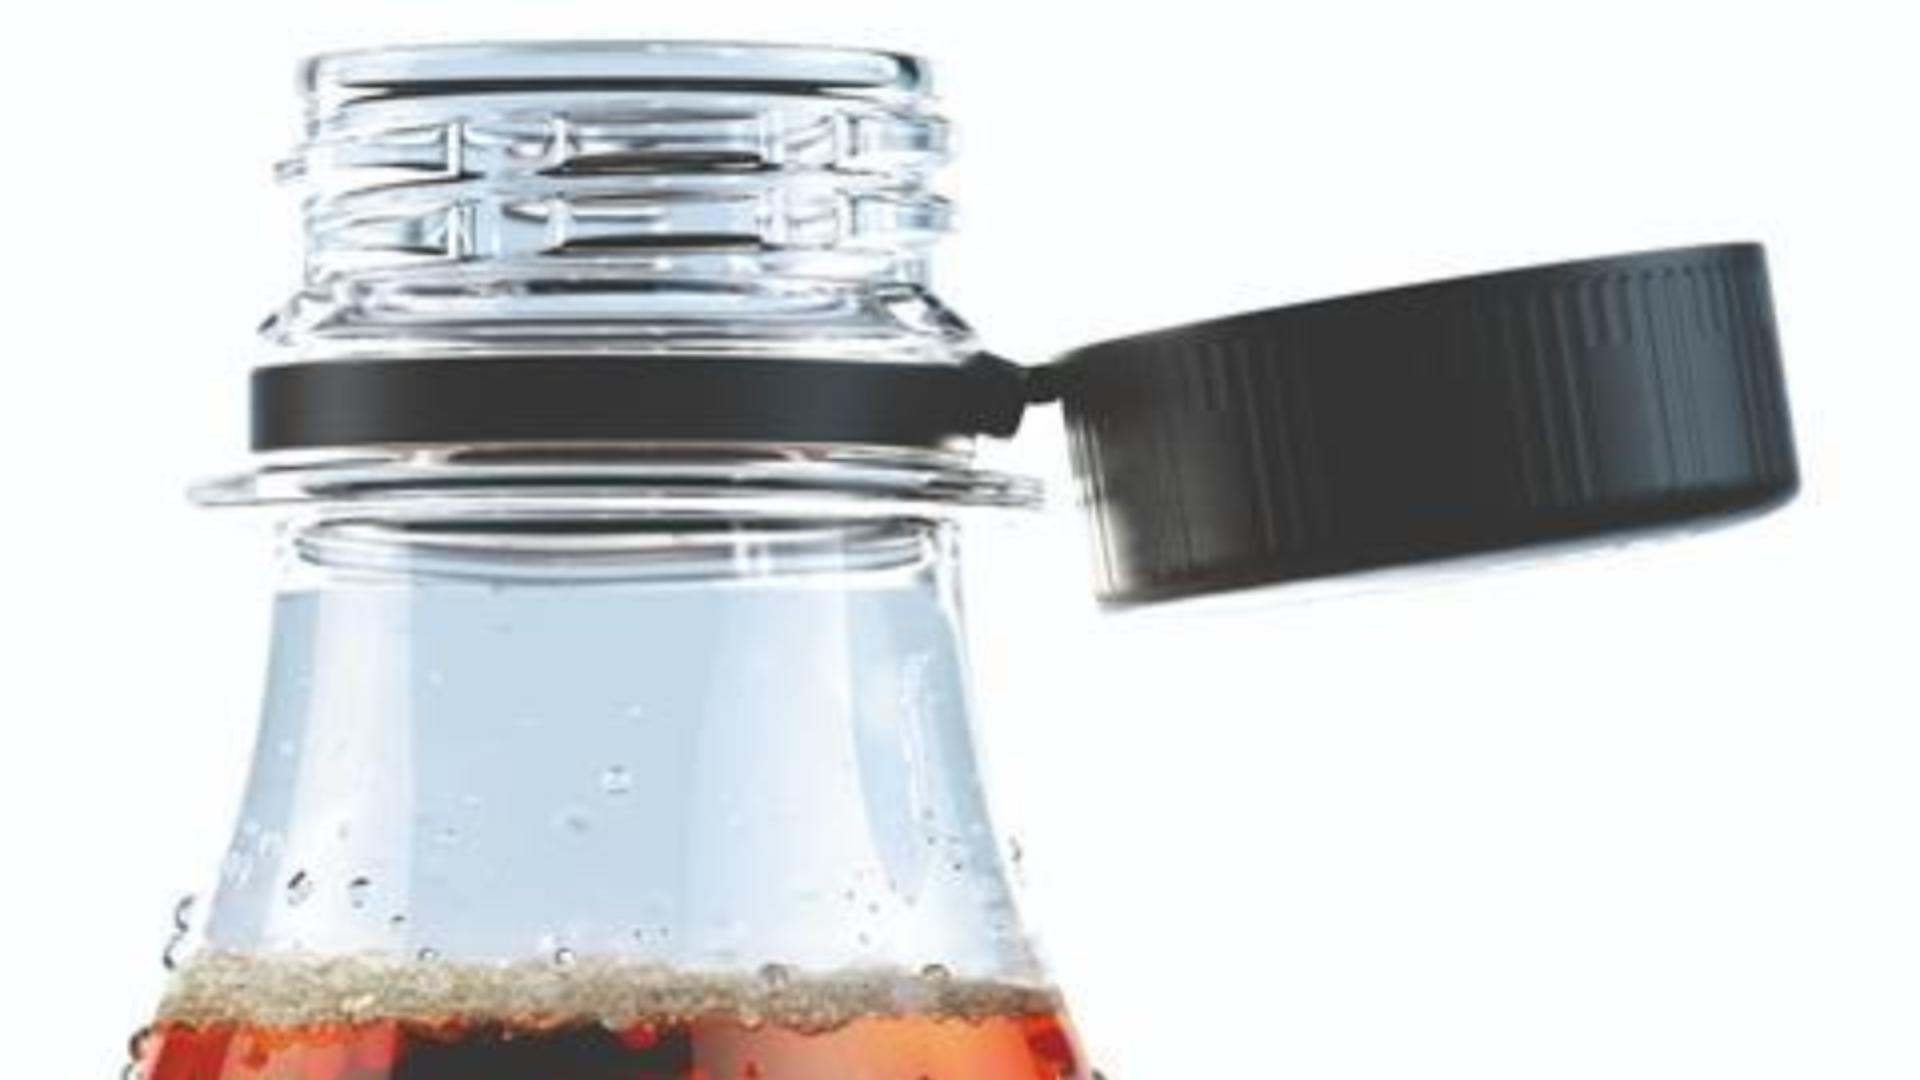 De ce a fost schimbat capacul la sticlele cu băuturi răcoritoare – Cât de enervant este pentru consumatori